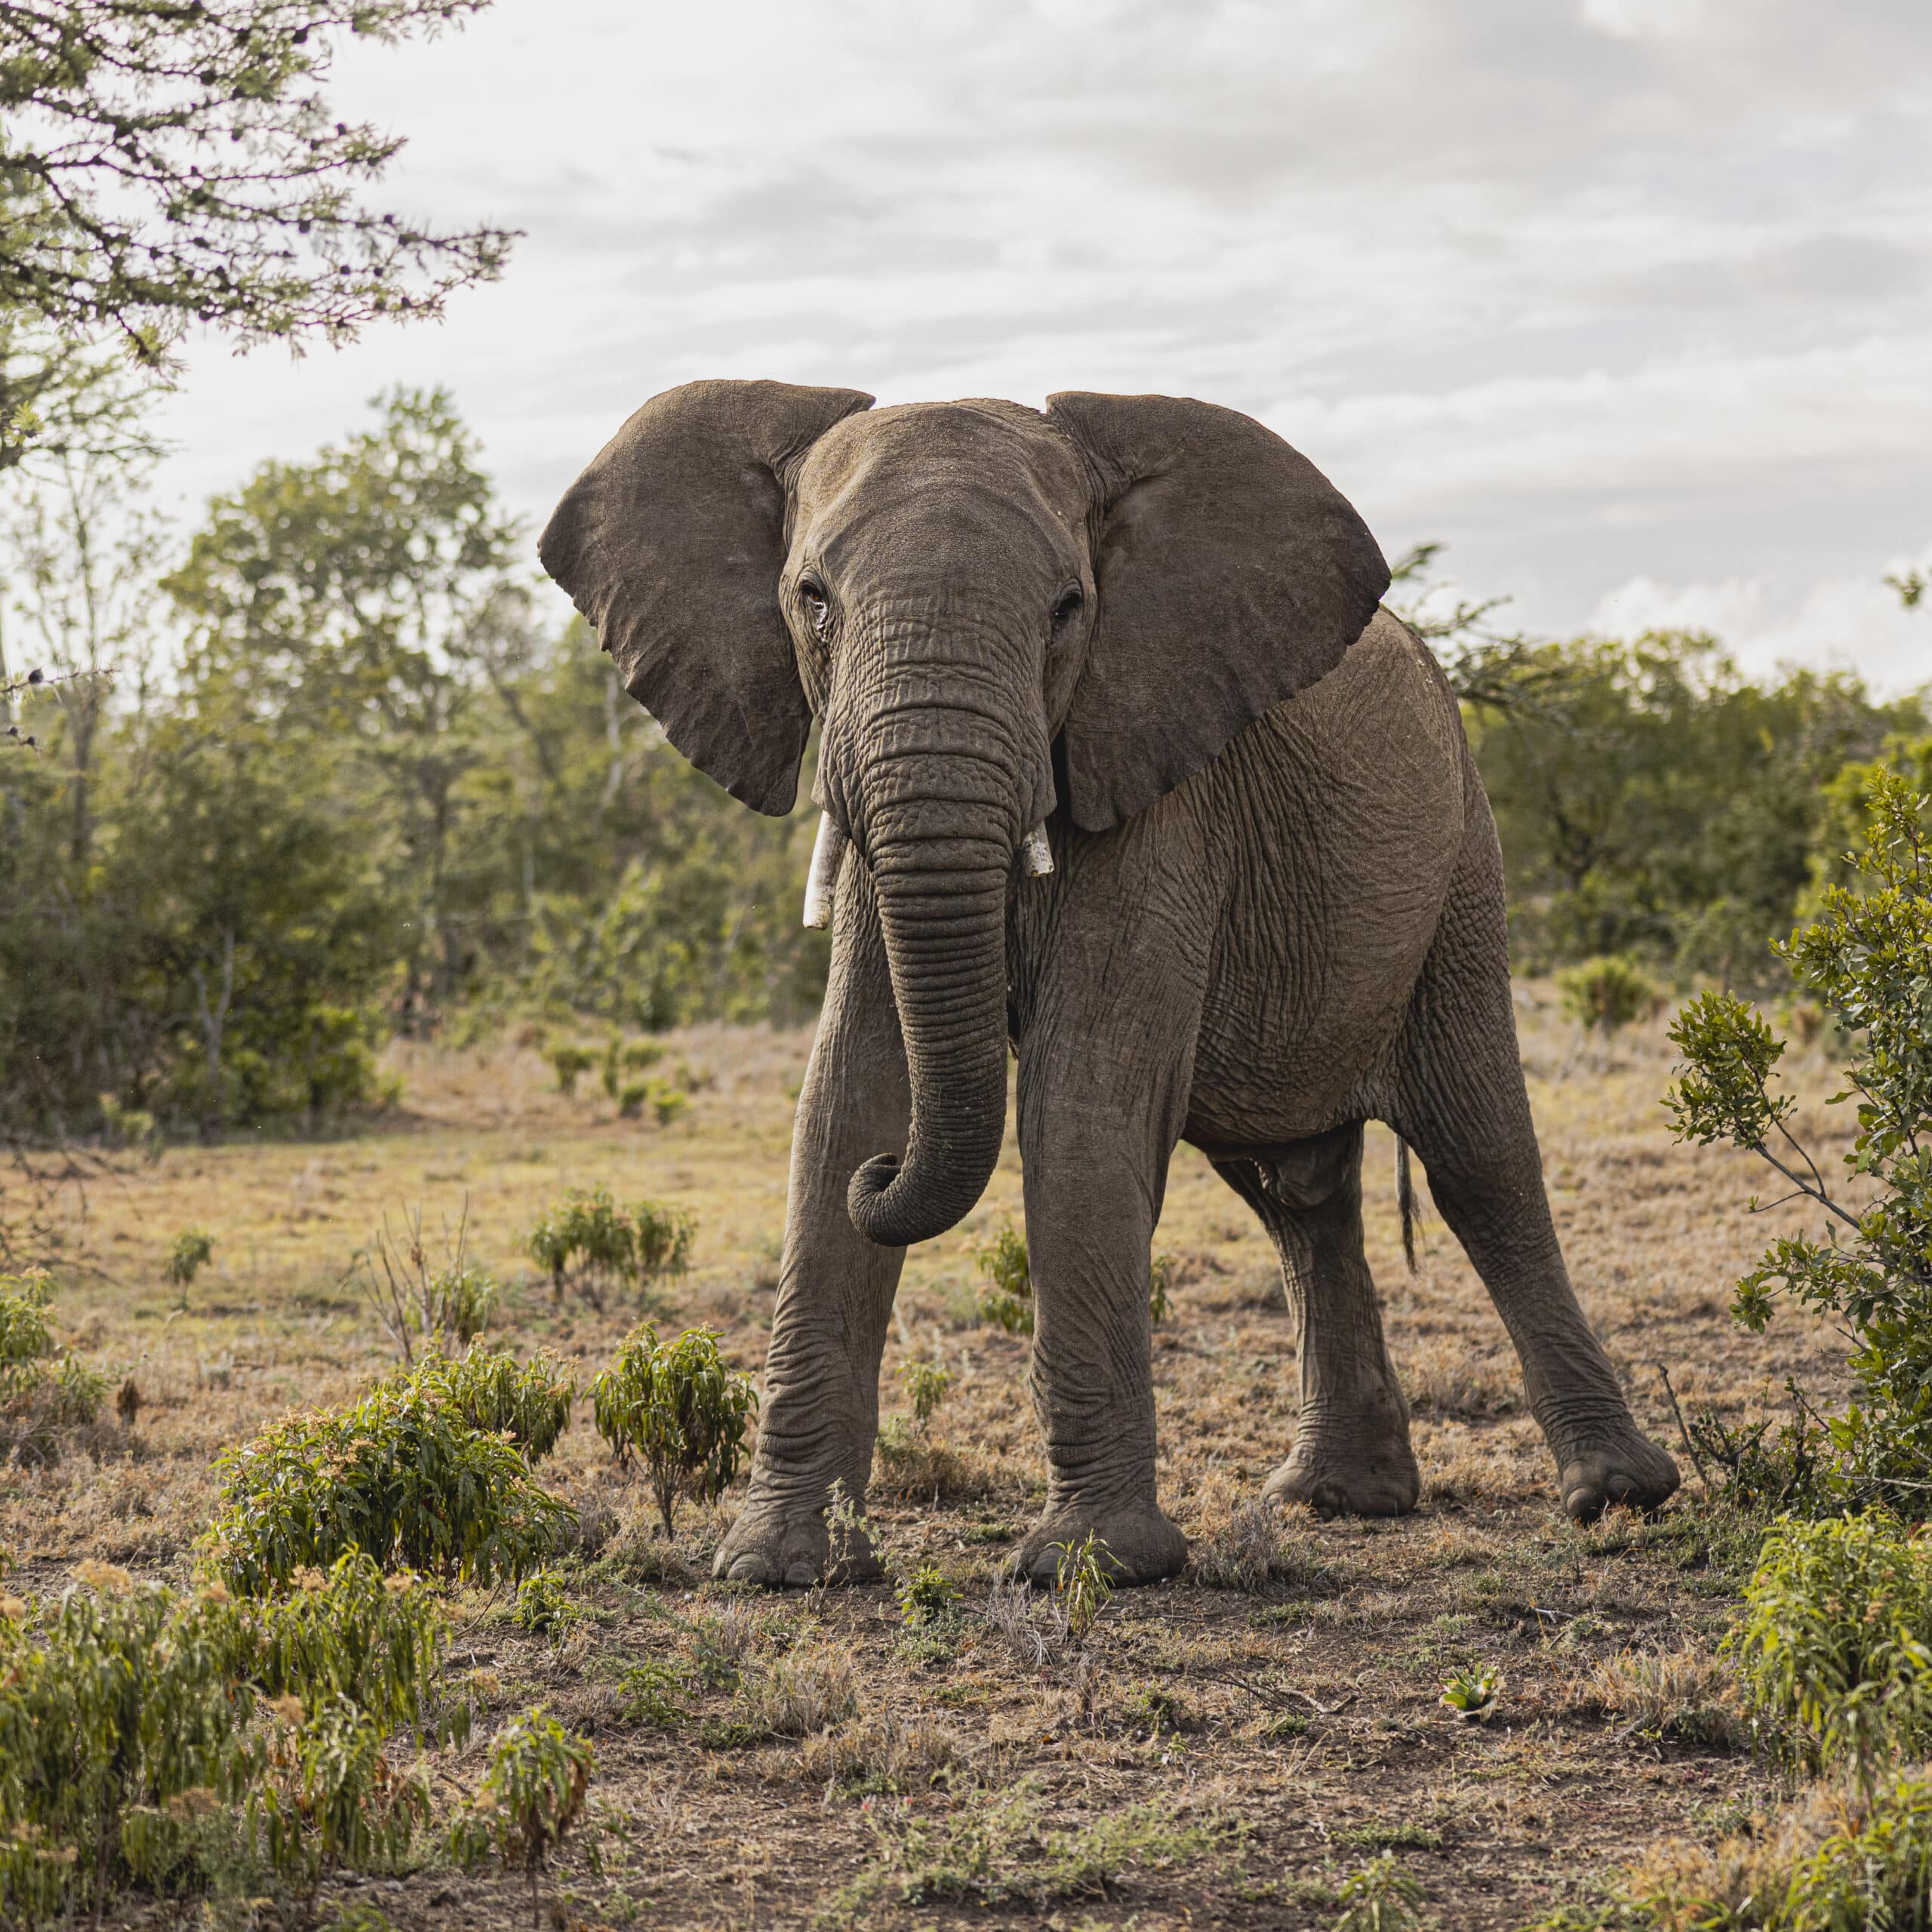 Ein afrikanischer Elefant steht in einer grasbewachsenen Savanne, umgeben von grünen Sträuchern und Bäumen, unter einem bewölkten Himmel. Die großen Ohren des Elefanten sind weit gespreizt und sein Rüssel hängt sanft nach vorne. © Fotografie Tomas Rodriguez